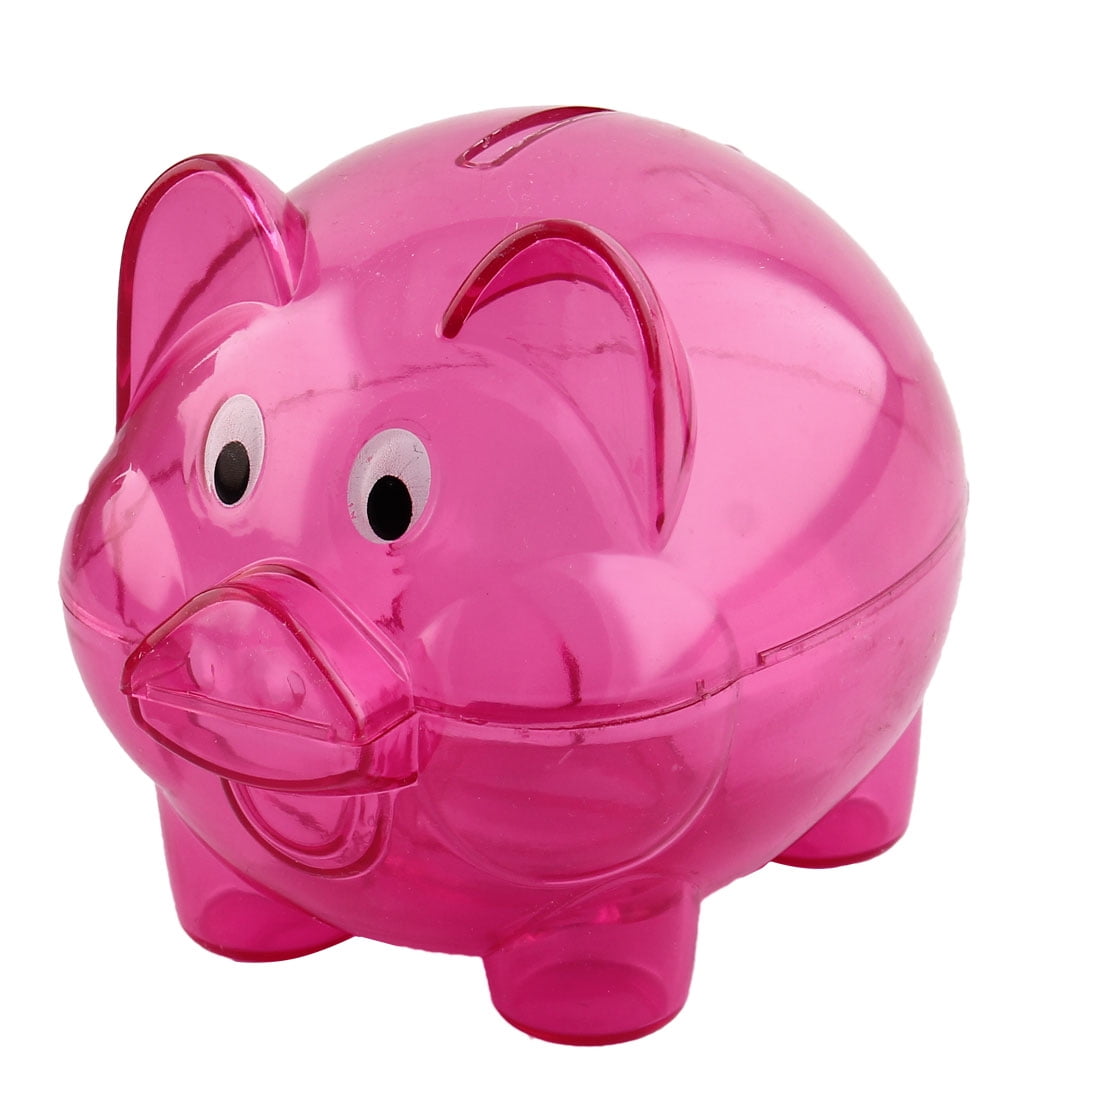 Blue WK7-D7 Best Gift Kid H&W Cartoon Pig Coin Bank Shatterproof Money Box Piggy Bank Can Store 700 Coins A